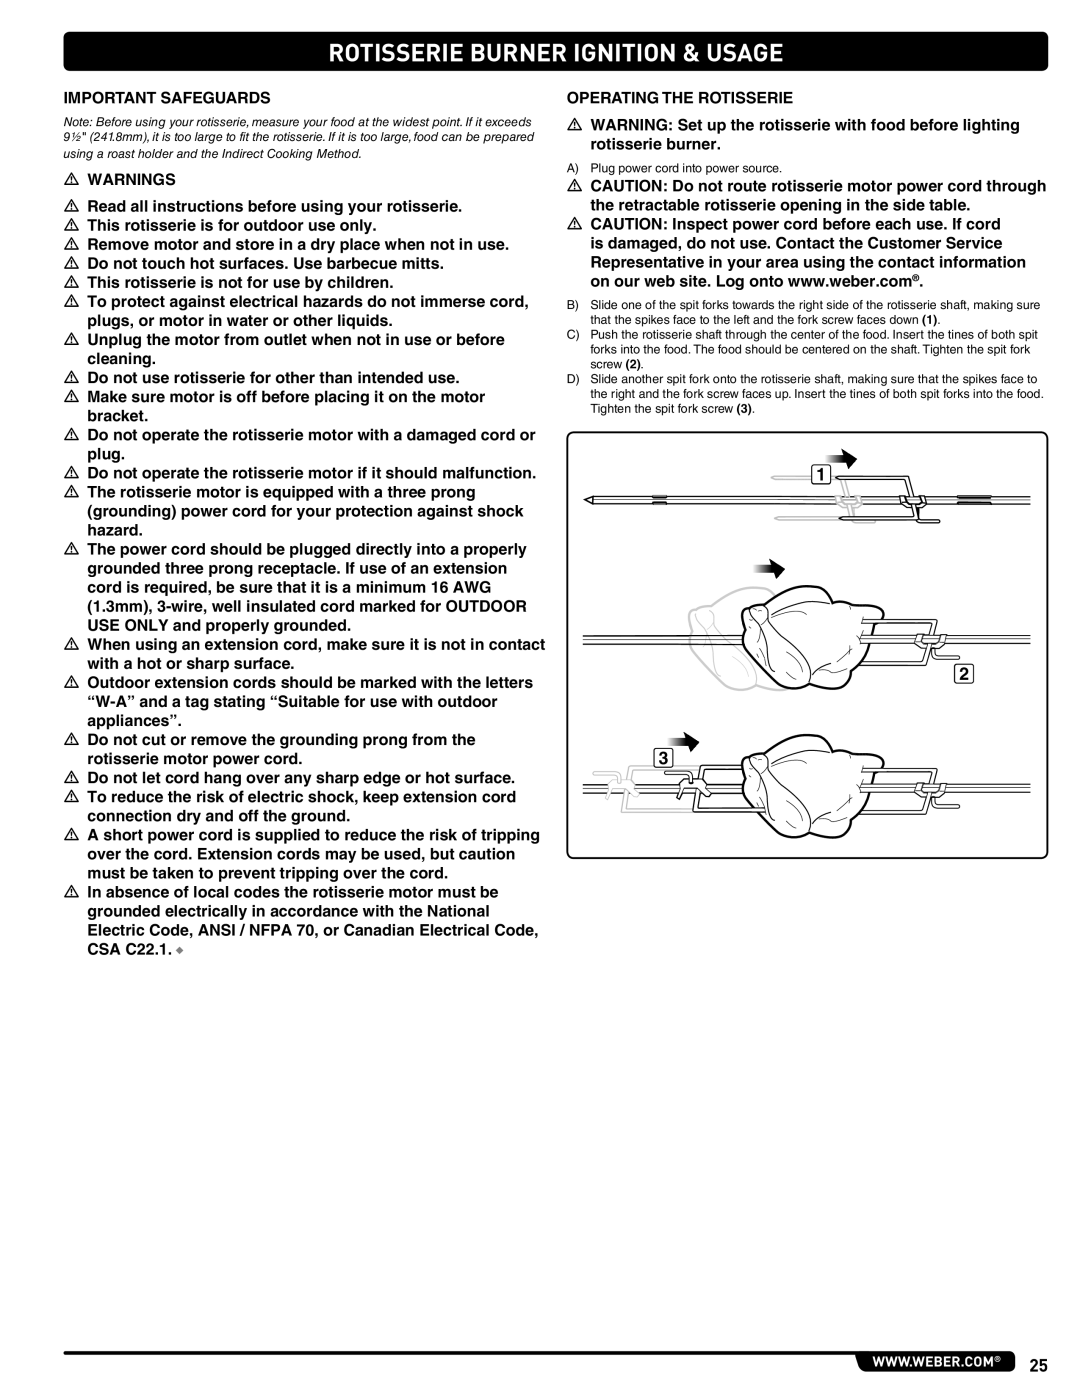 Weber 56576 manual Rotisserie Burner Ignition & Usage, Important Safeguards 